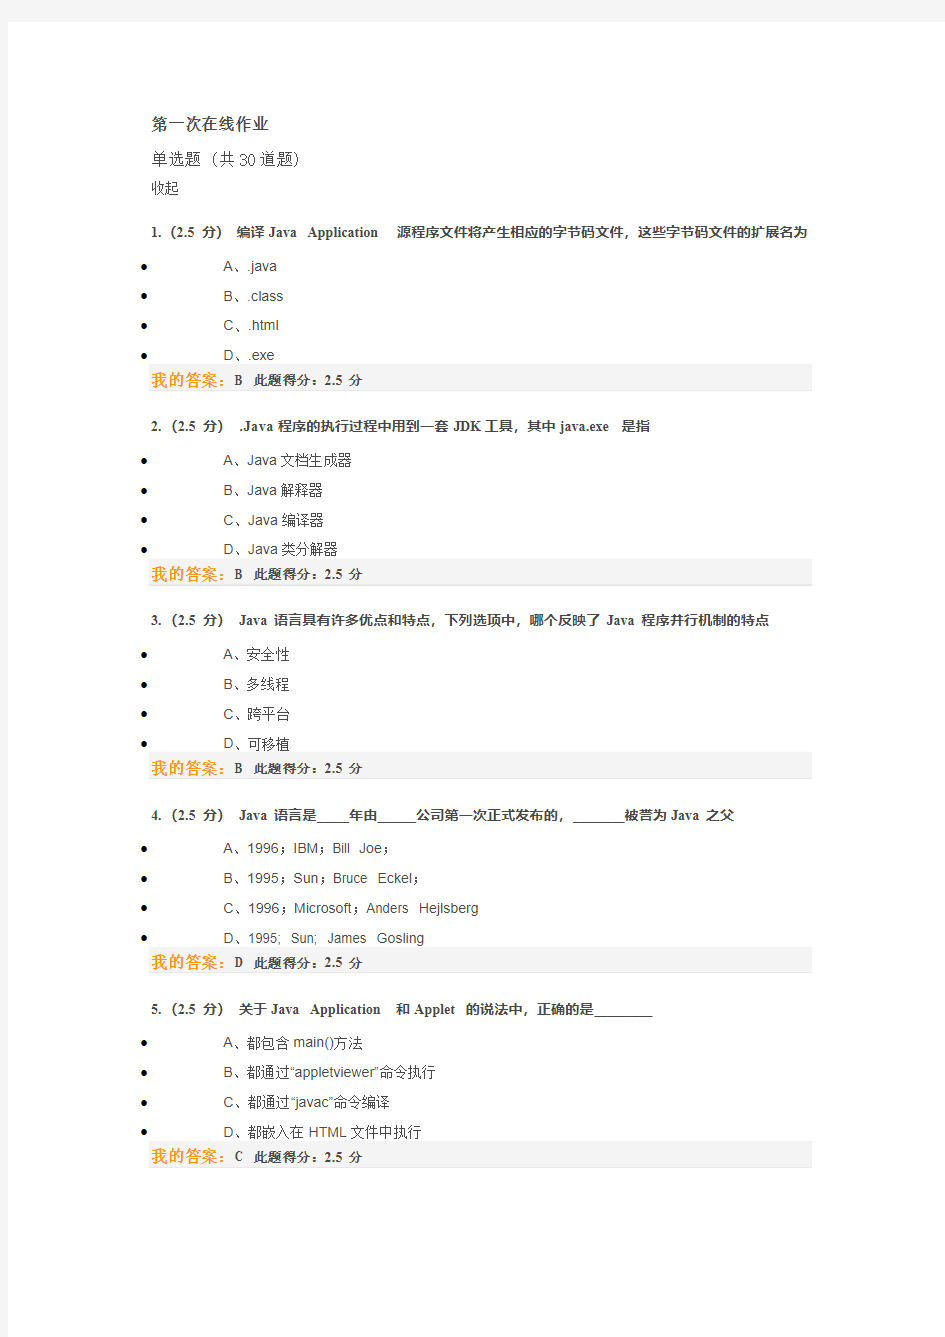 中国石油大学Java语言程序设计第一次作业